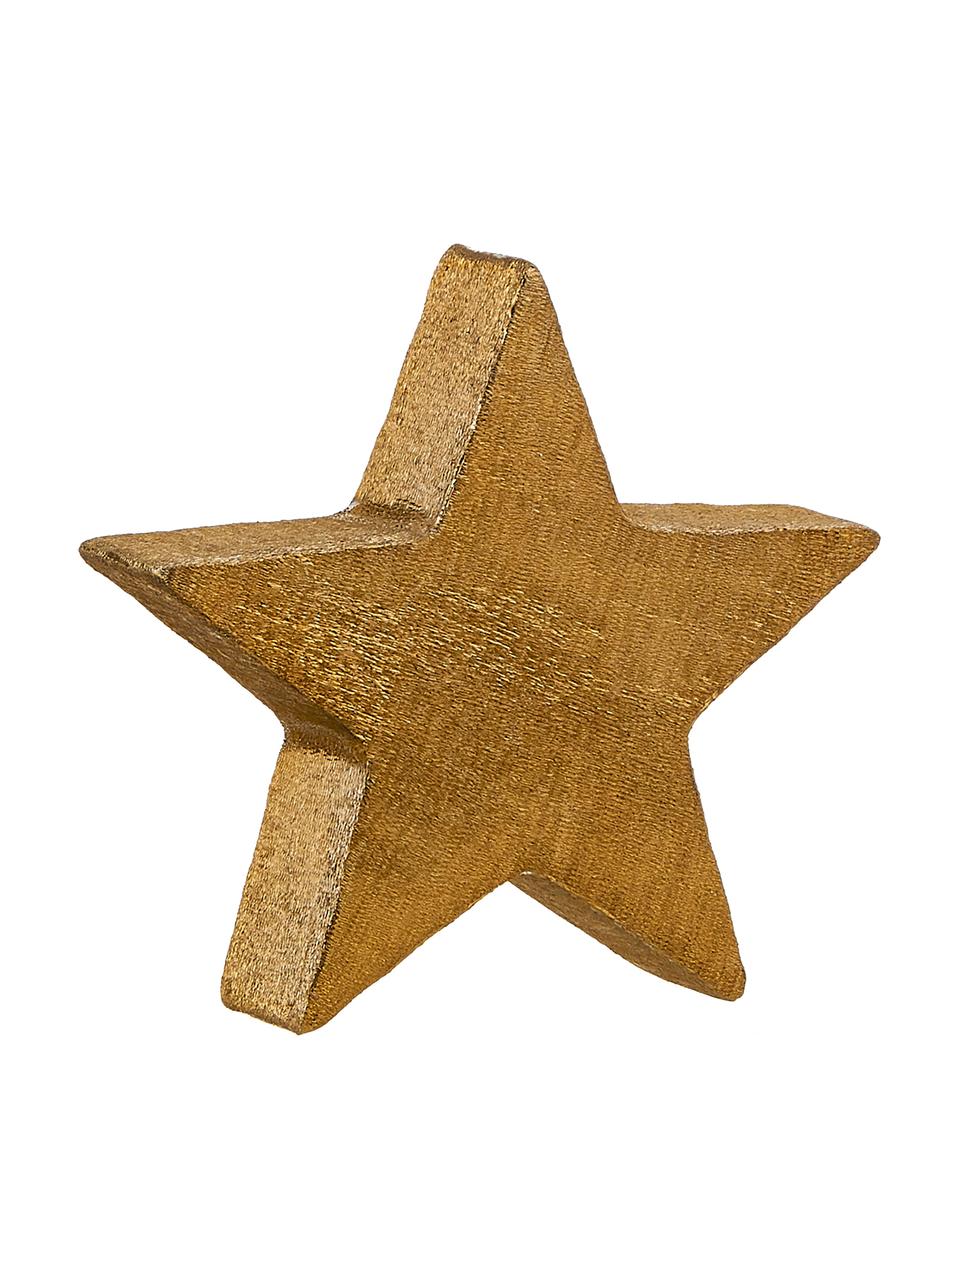 Deko-Objekt Mace-Star, Aluminium, beschichtet, Goldfarben, 15 x 15 cm